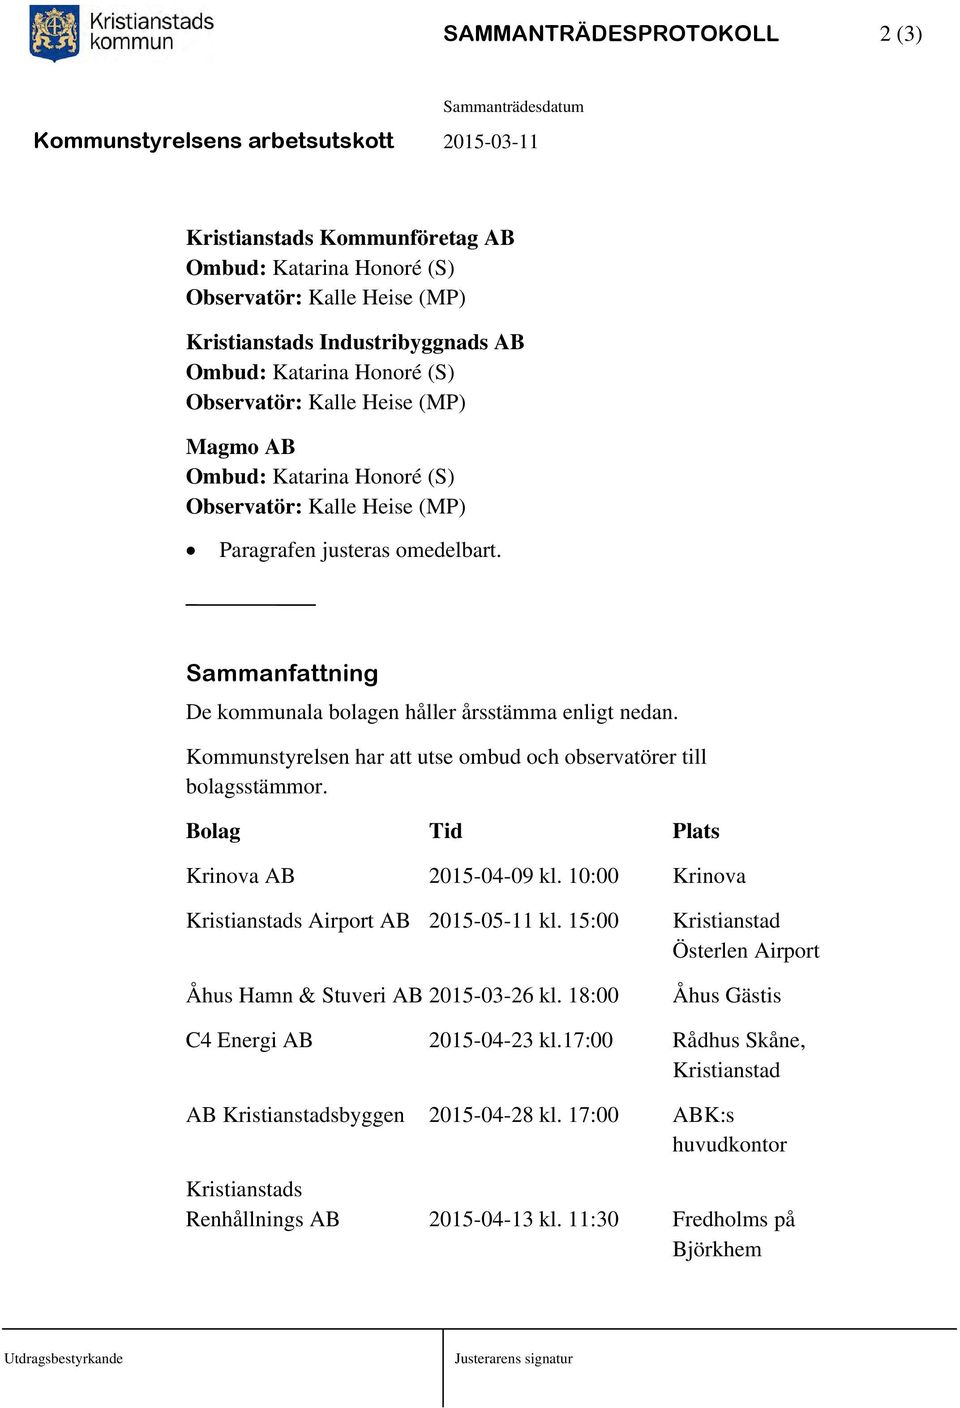 Kommunstyrelsen har att utse ombud och observatörer till bolagsstämmor. Bolag Tid Plats Krinova AB 2015-04-09 kl. 10:00 Krinova Kristianstads Airport AB 2015-05-11 kl.